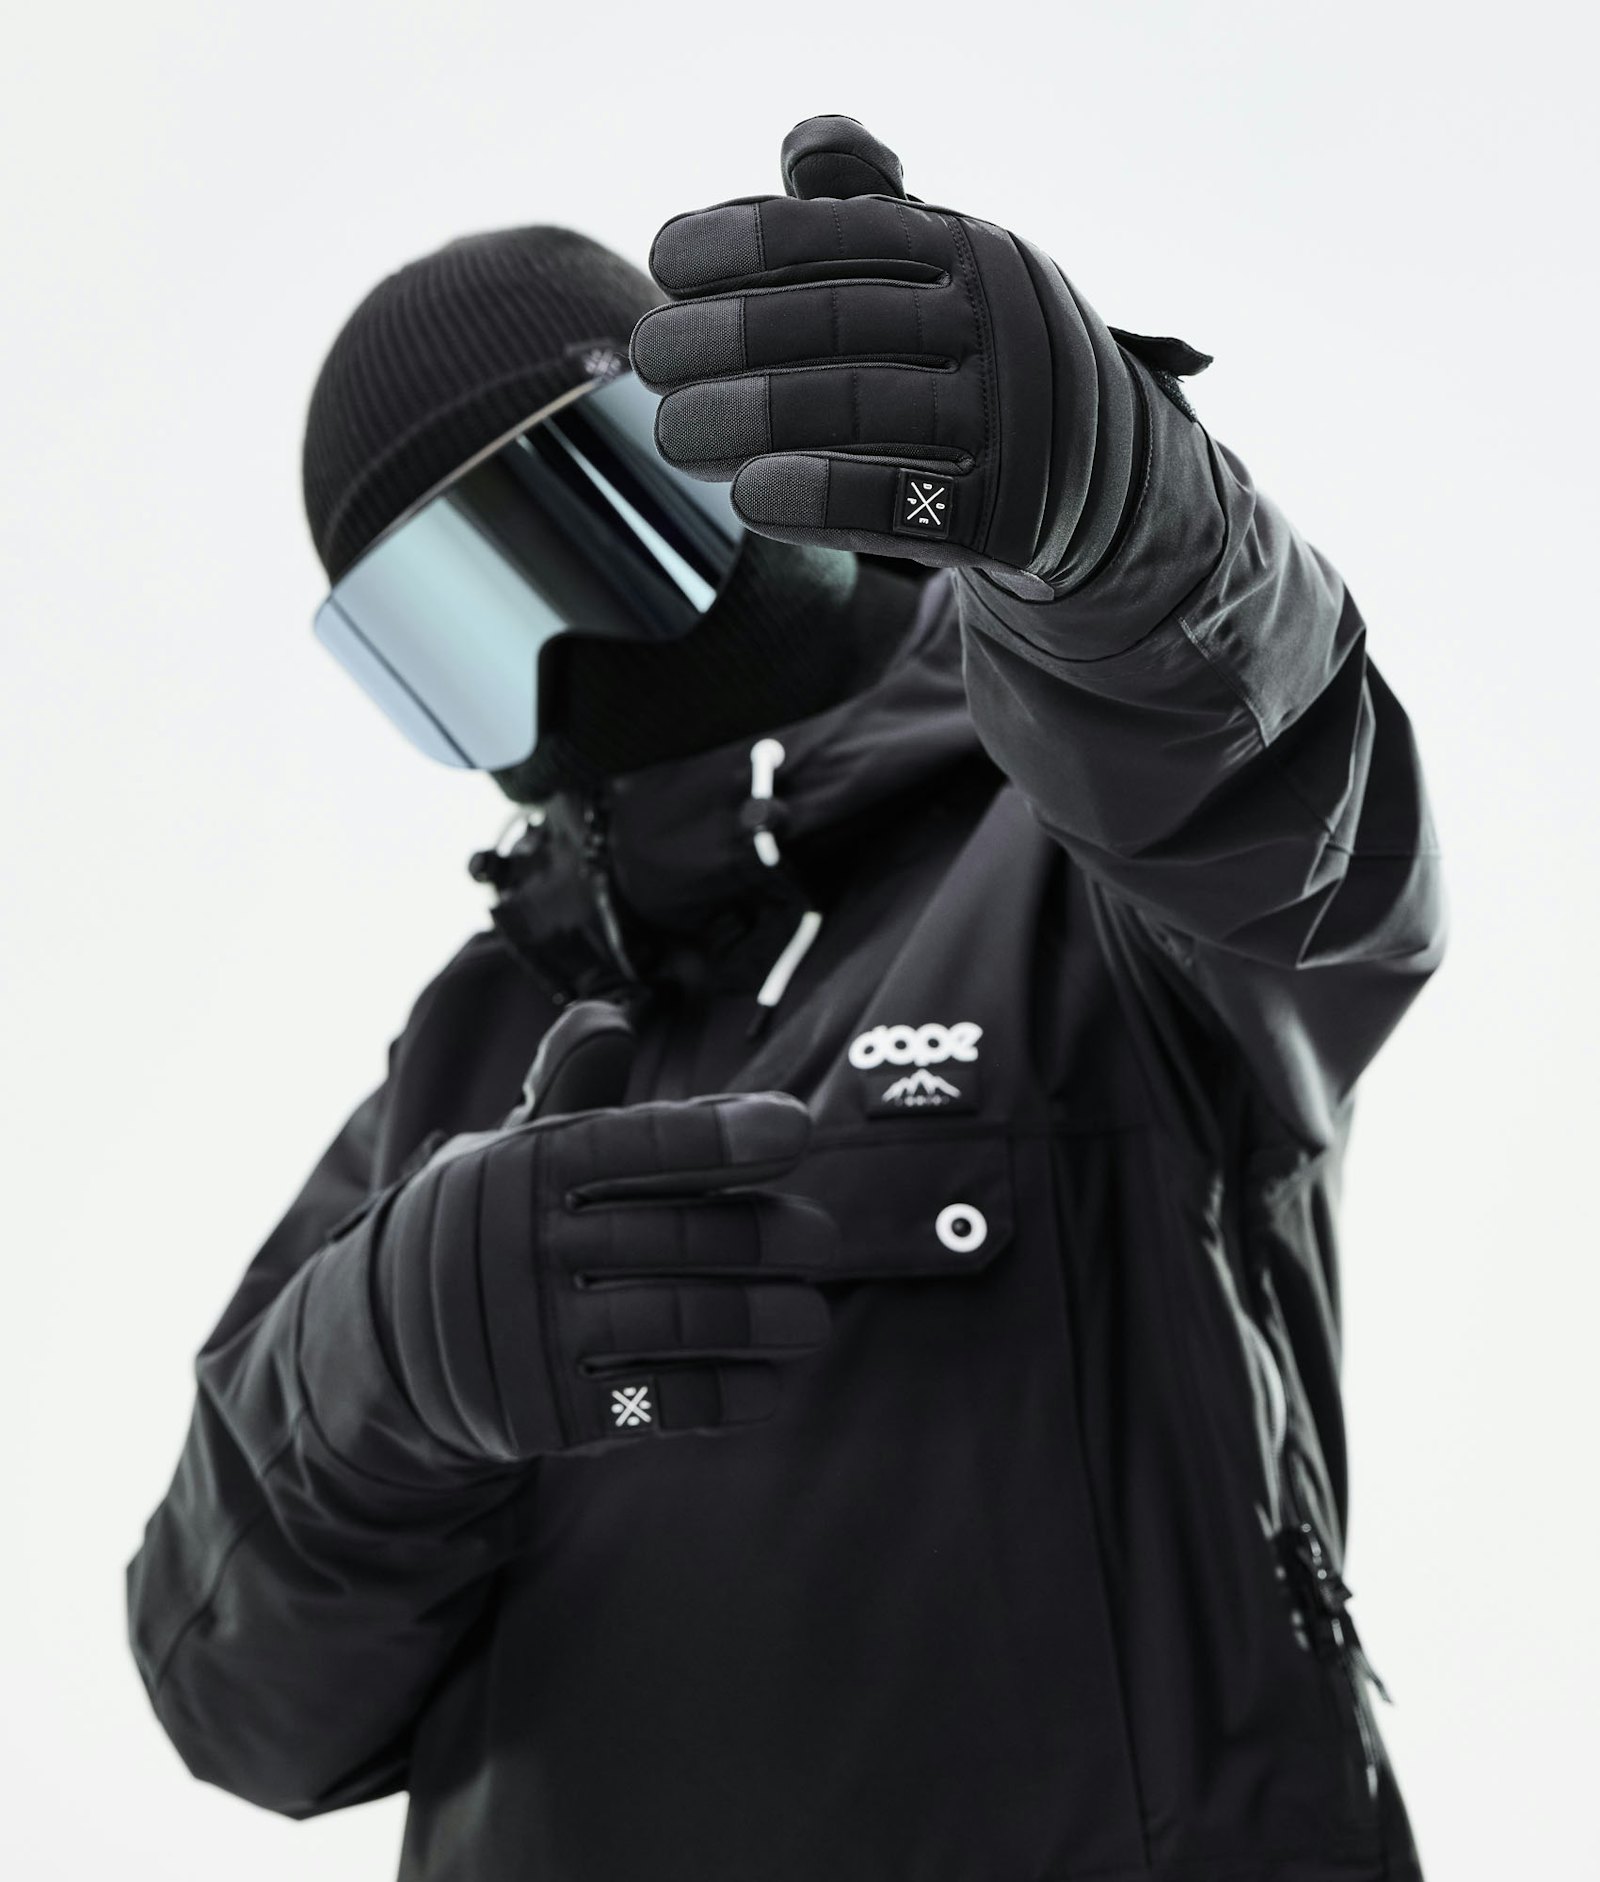 Dope Ace 2021 Ski Gloves Black